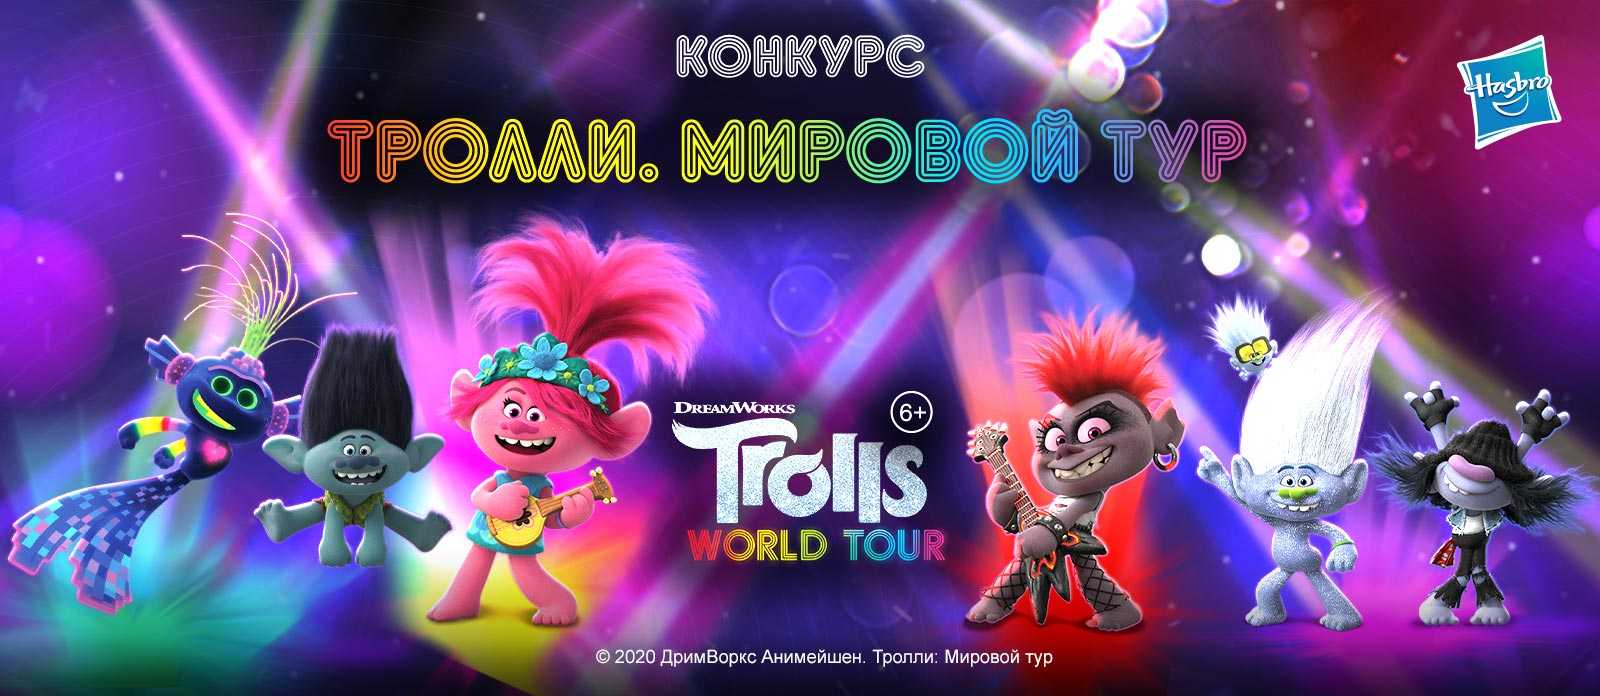 Мировое турне троллей (саундтрек) - trolls world tour (soundtrack)